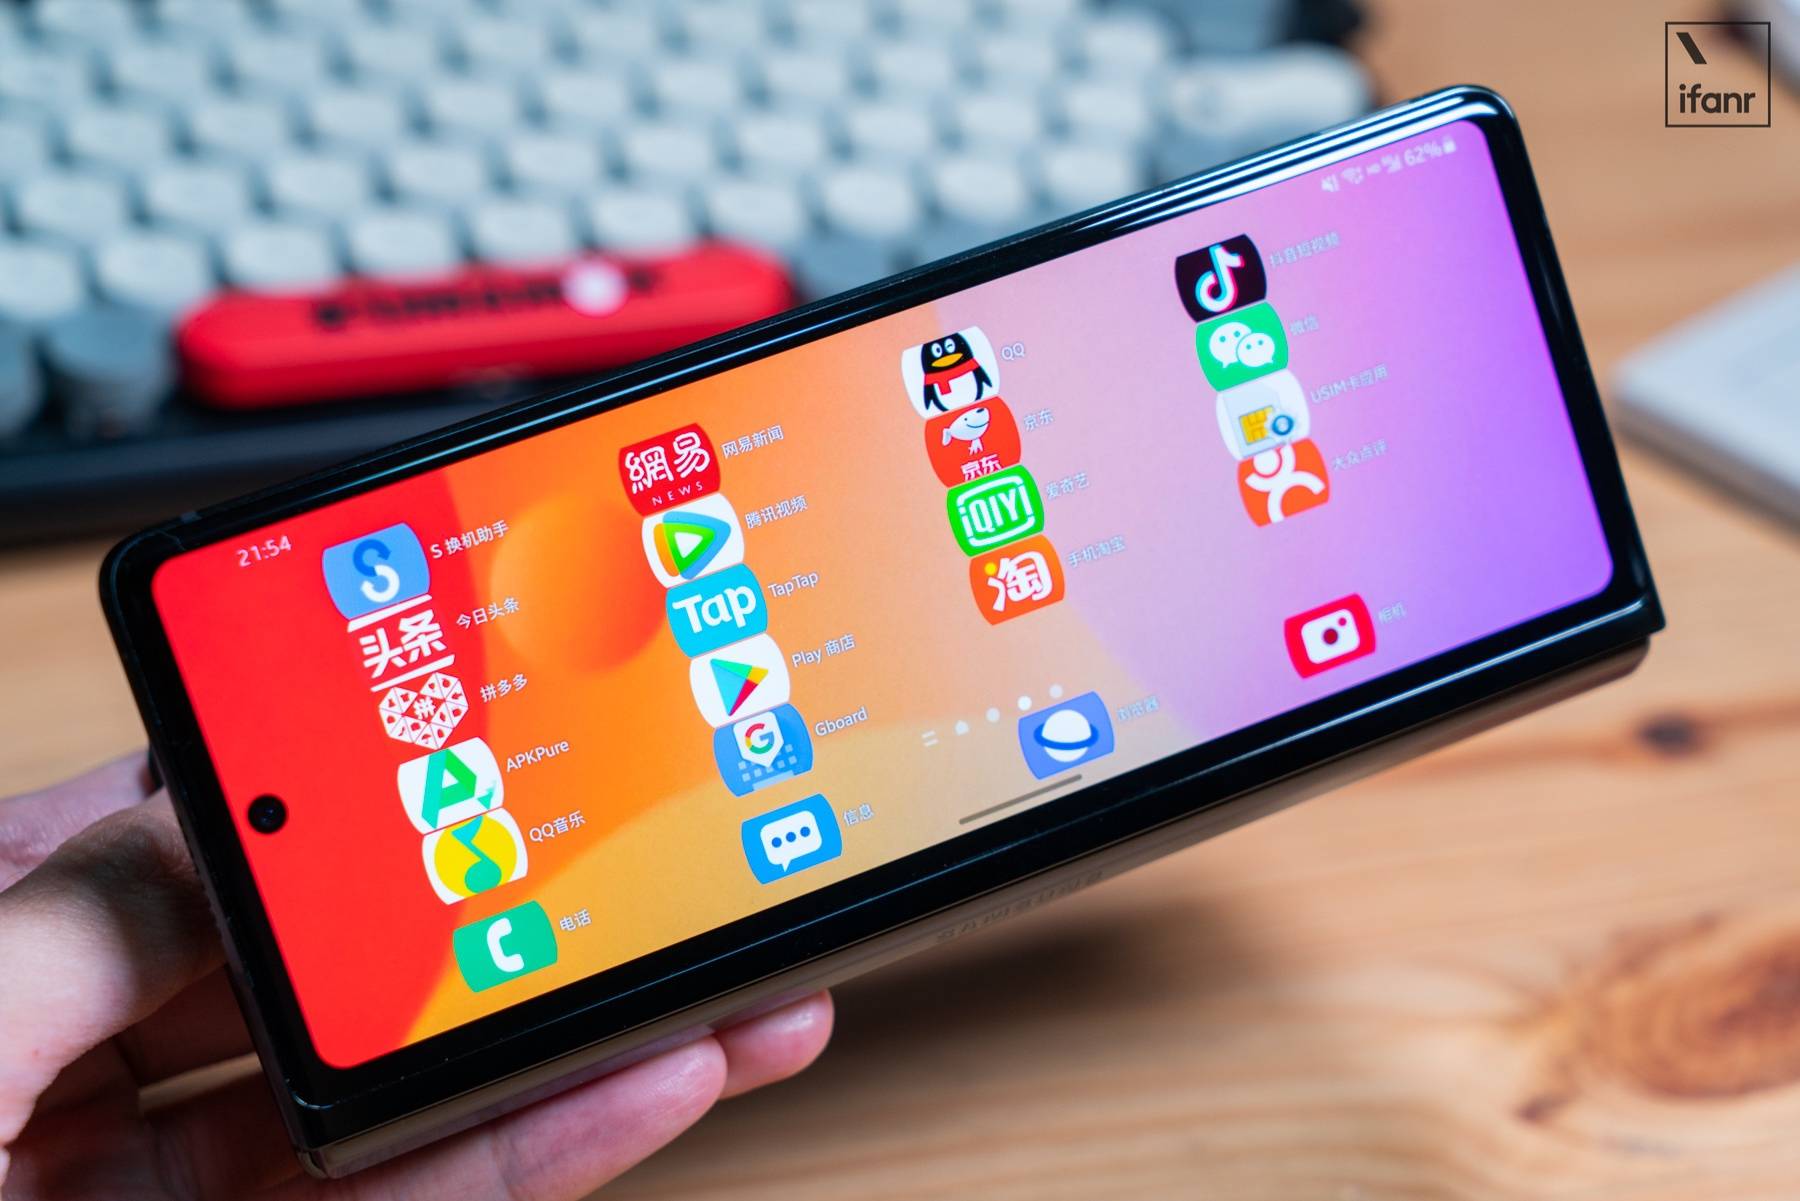 DSC0652 1 - Samsung Galaxy Z Fold2 5G inizia: questo è il telefono con schermo pieghevole che vogliamo